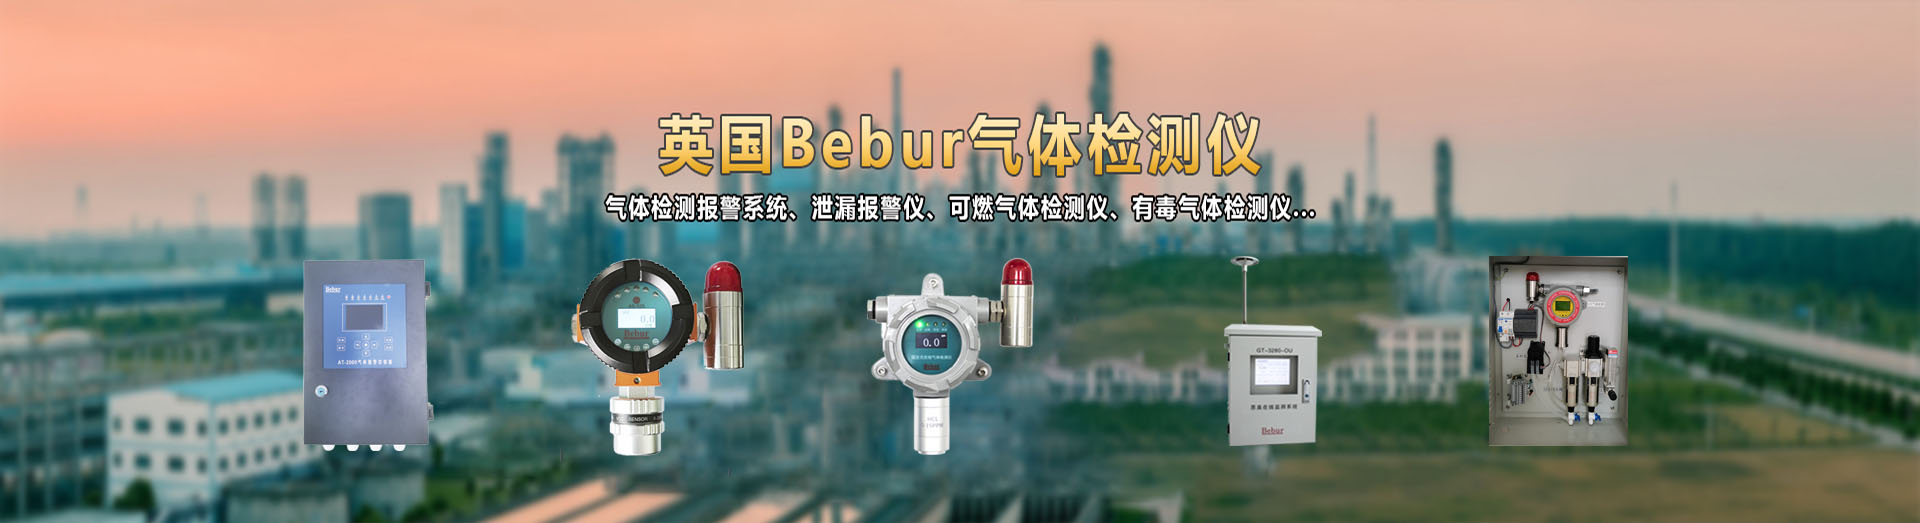 英国Bebur品牌进口氧气检测仪系列产品